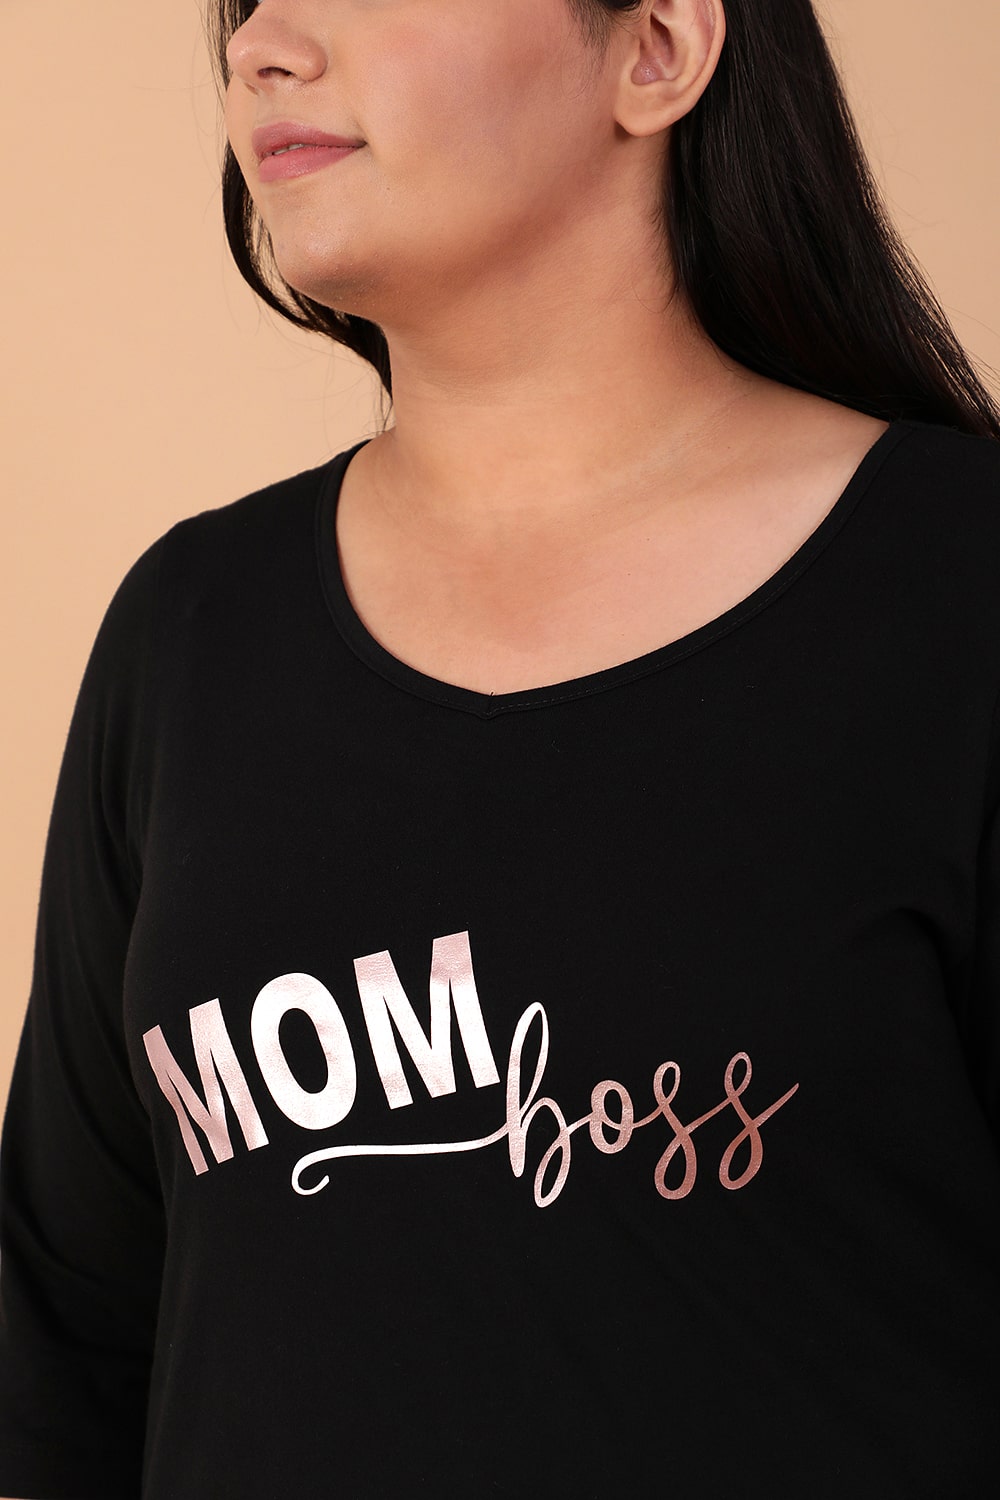 Mom Boss Black Tshirt for Women